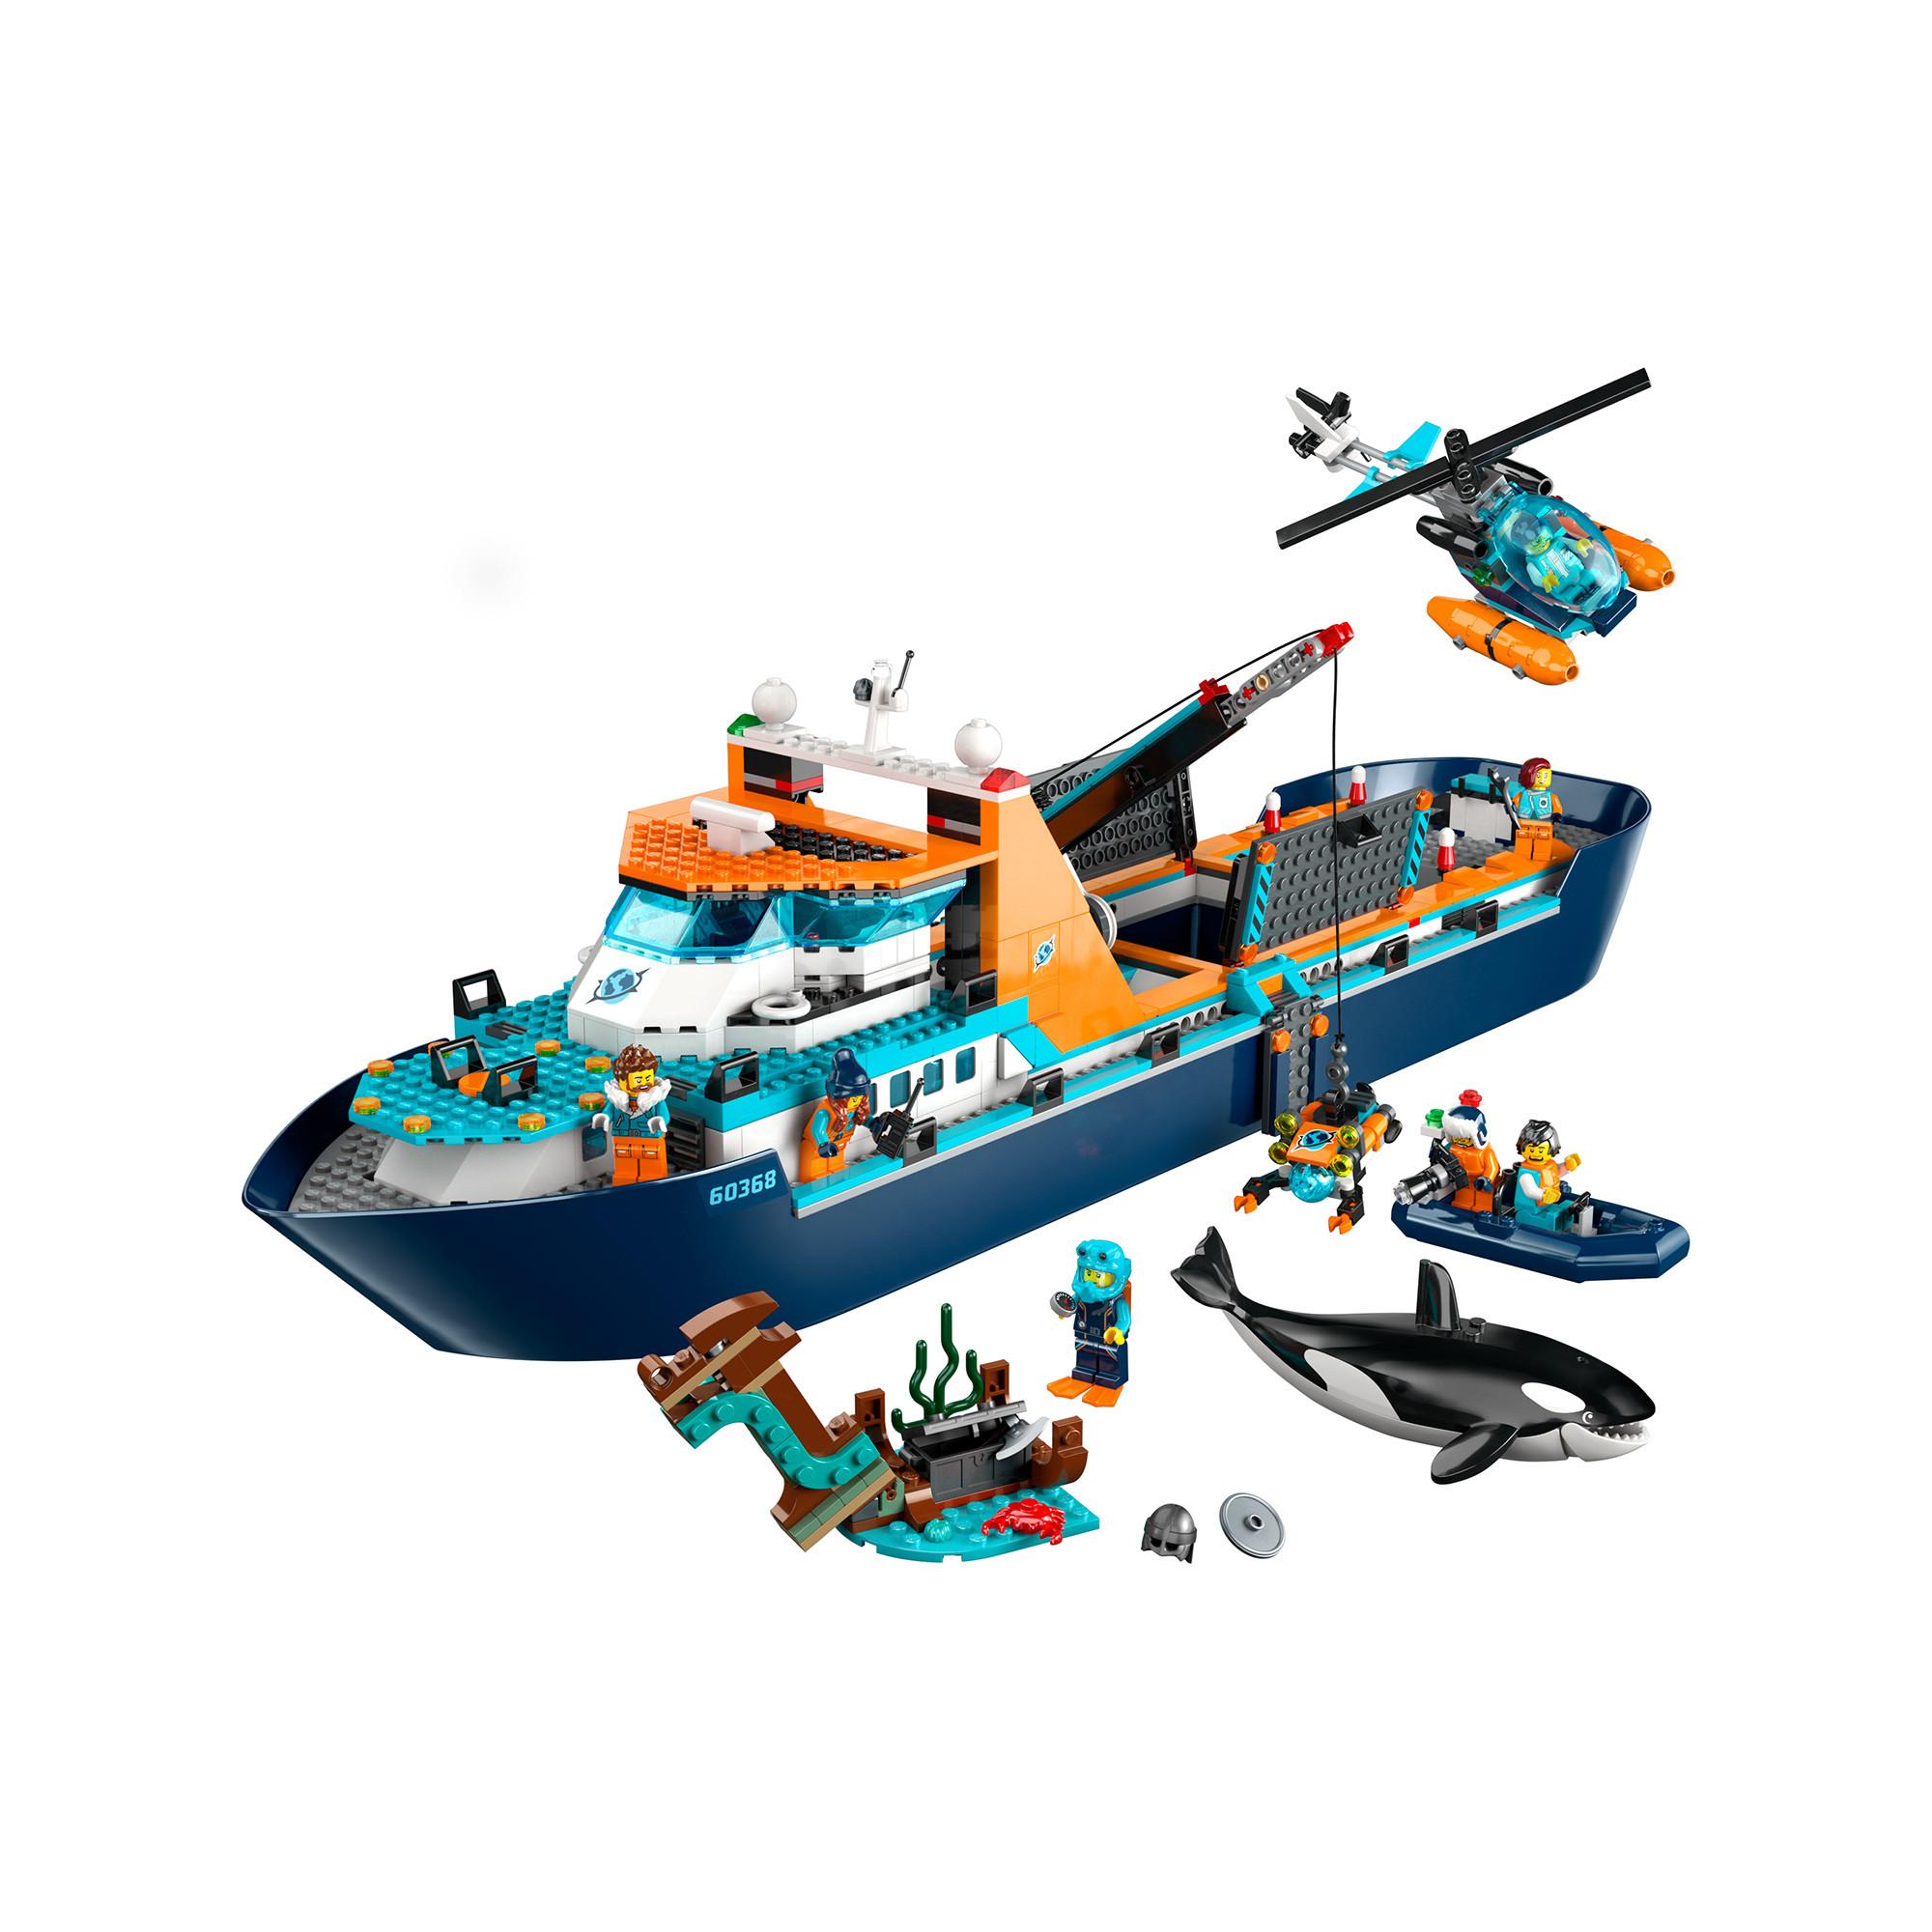 LEGO®  60368 Esploratore artico 